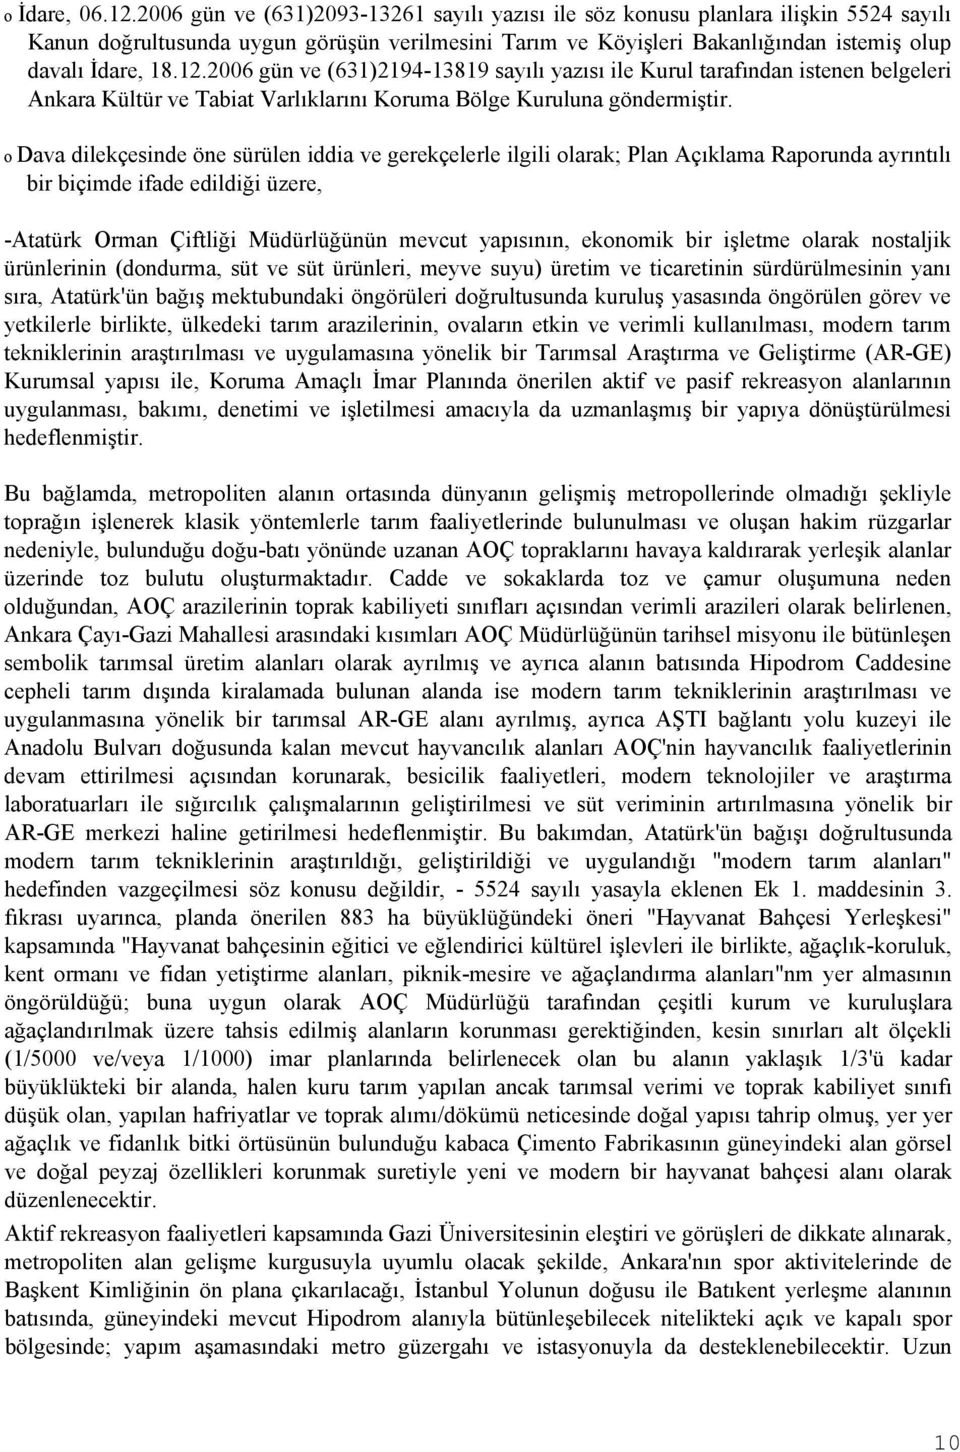 2006 gün ve (631)2194-13819 sayılı yazısı ile Kurul tarafından istenen belgeleri Ankara Kültür ve Tabiat Varlıklarını Koruma Bölge Kuruluna göndermiştir.